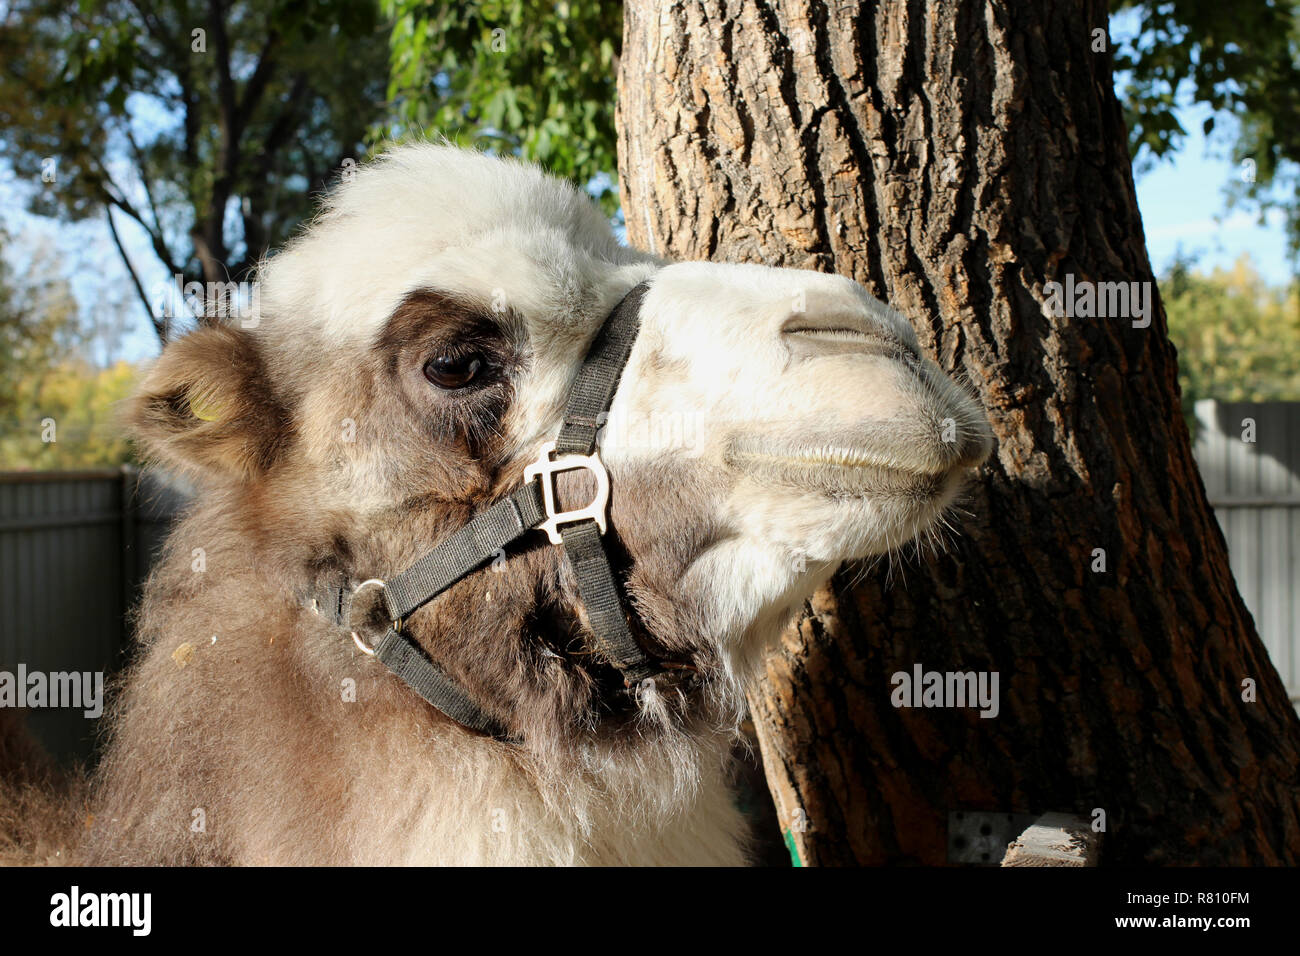 Près des stands de chameau près d'un arbre dans la fourrure furry bridle durant la journée Banque D'Images